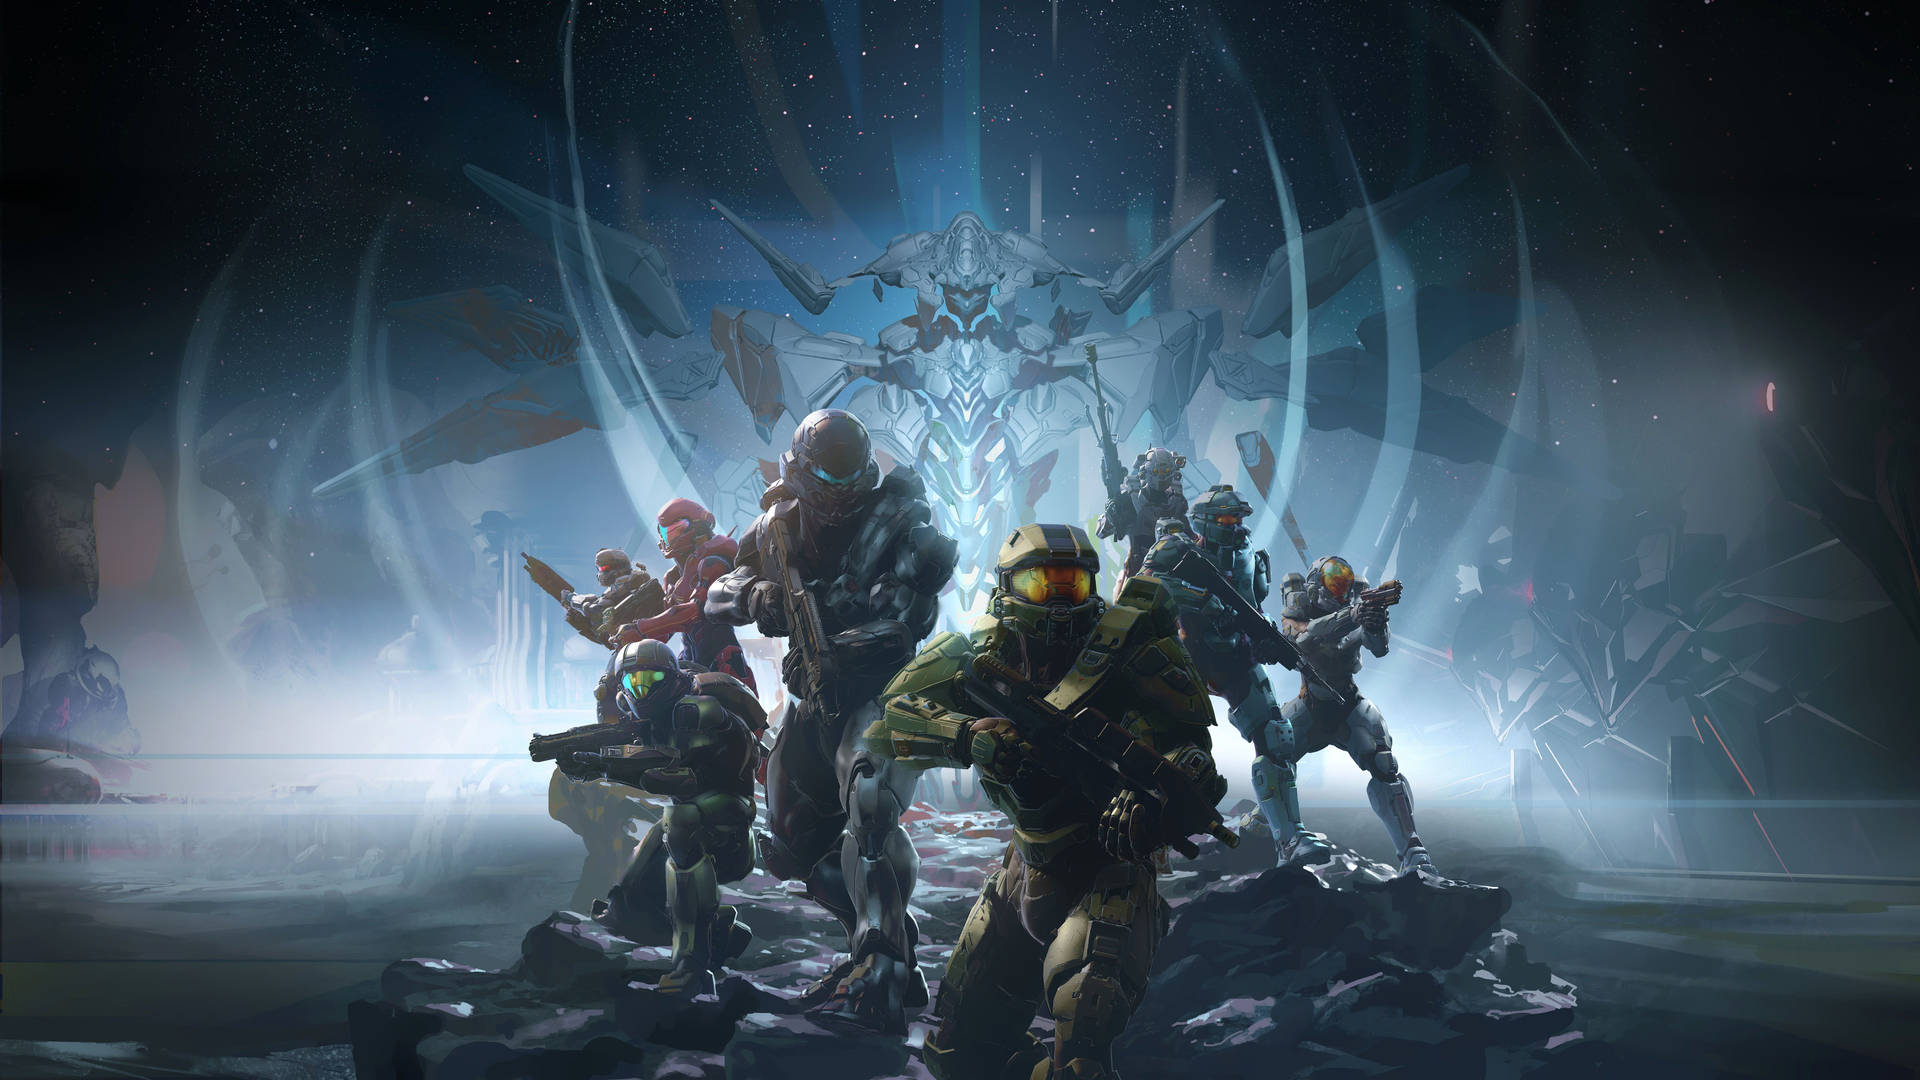 Halo là một trong những game hành động kinh điển và được yêu thích nhất mọi thời đại. Và nếu bạn muốn có một trải nghiệm tốt nhất về hình ảnh trong game này, hãy tải ngay ảnh nền game Halo 8k để được trải nghiệm độ phân giải siêu cao và đẹp mắt nhất.